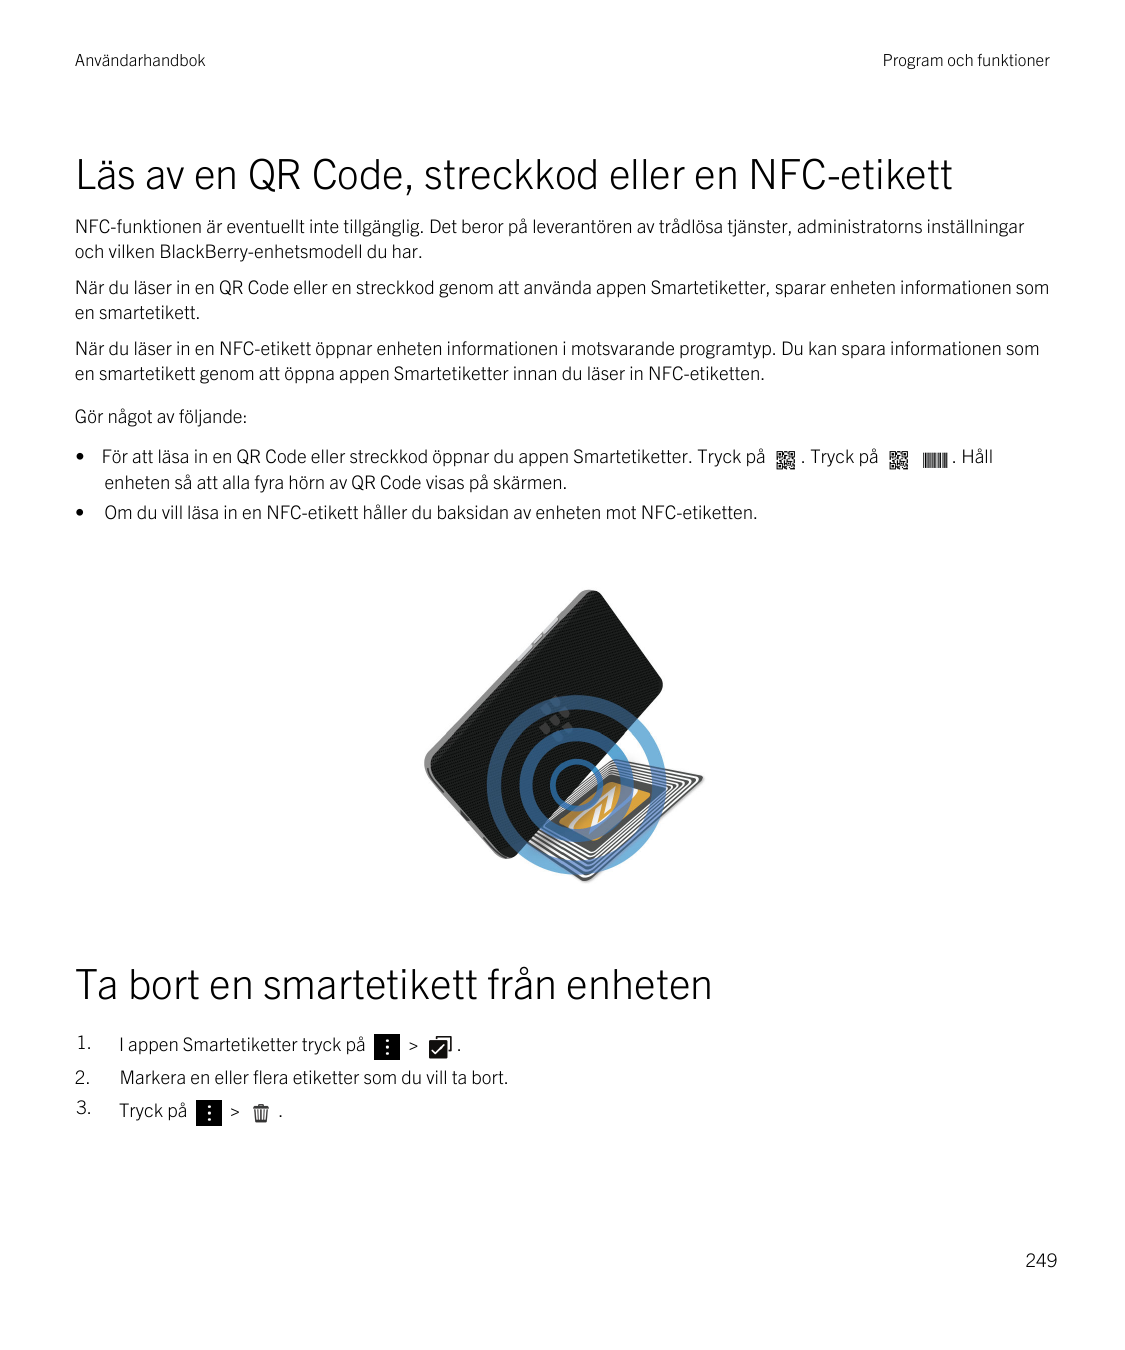 AnvändarhandbokProgram och funktionerLäs av en QR Code, streckkod eller en NFC-etikettNFC-funktionen är eventuellt inte tillgäng